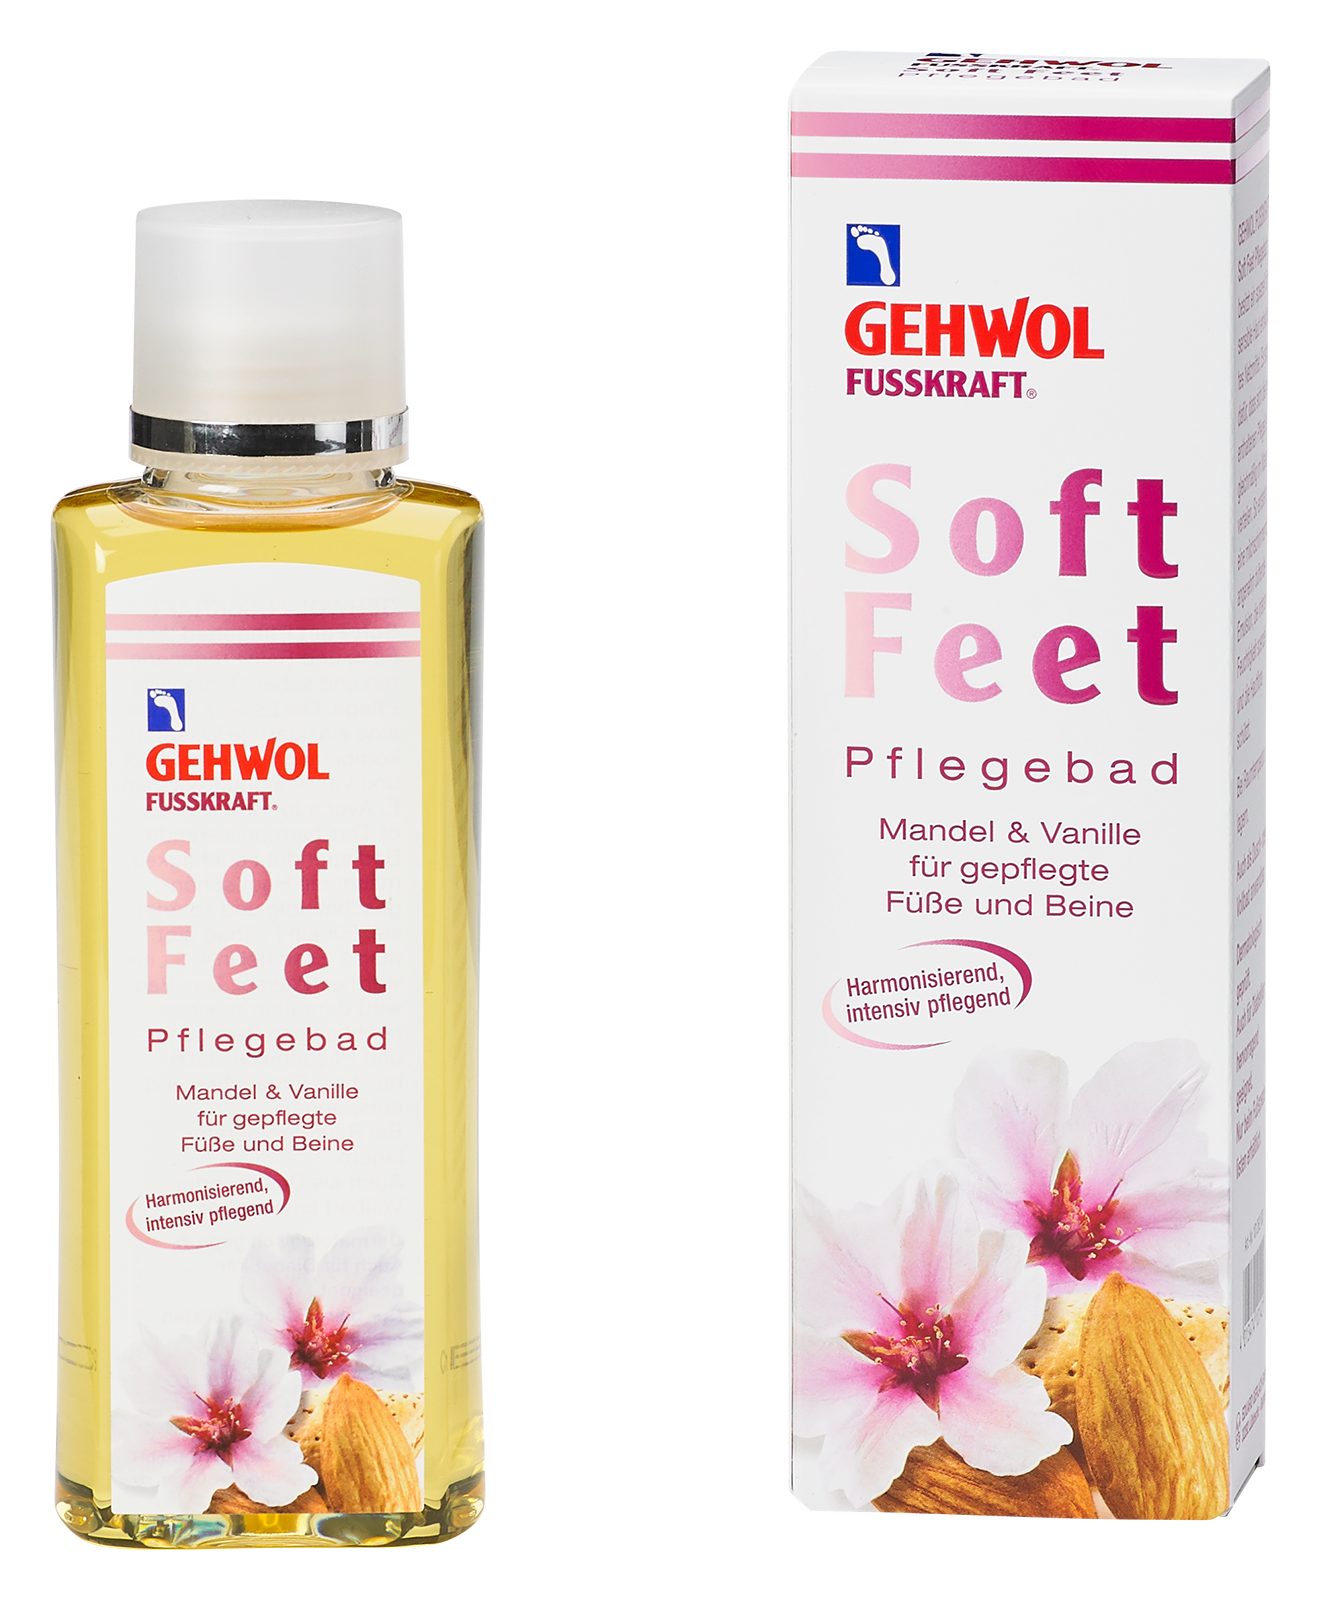 Gehwol Fußbad-Zusatz GEHWOL FUSSKRAFT Soft Feet Bad Mandel&Vanille, gepflegte Füße&Beine